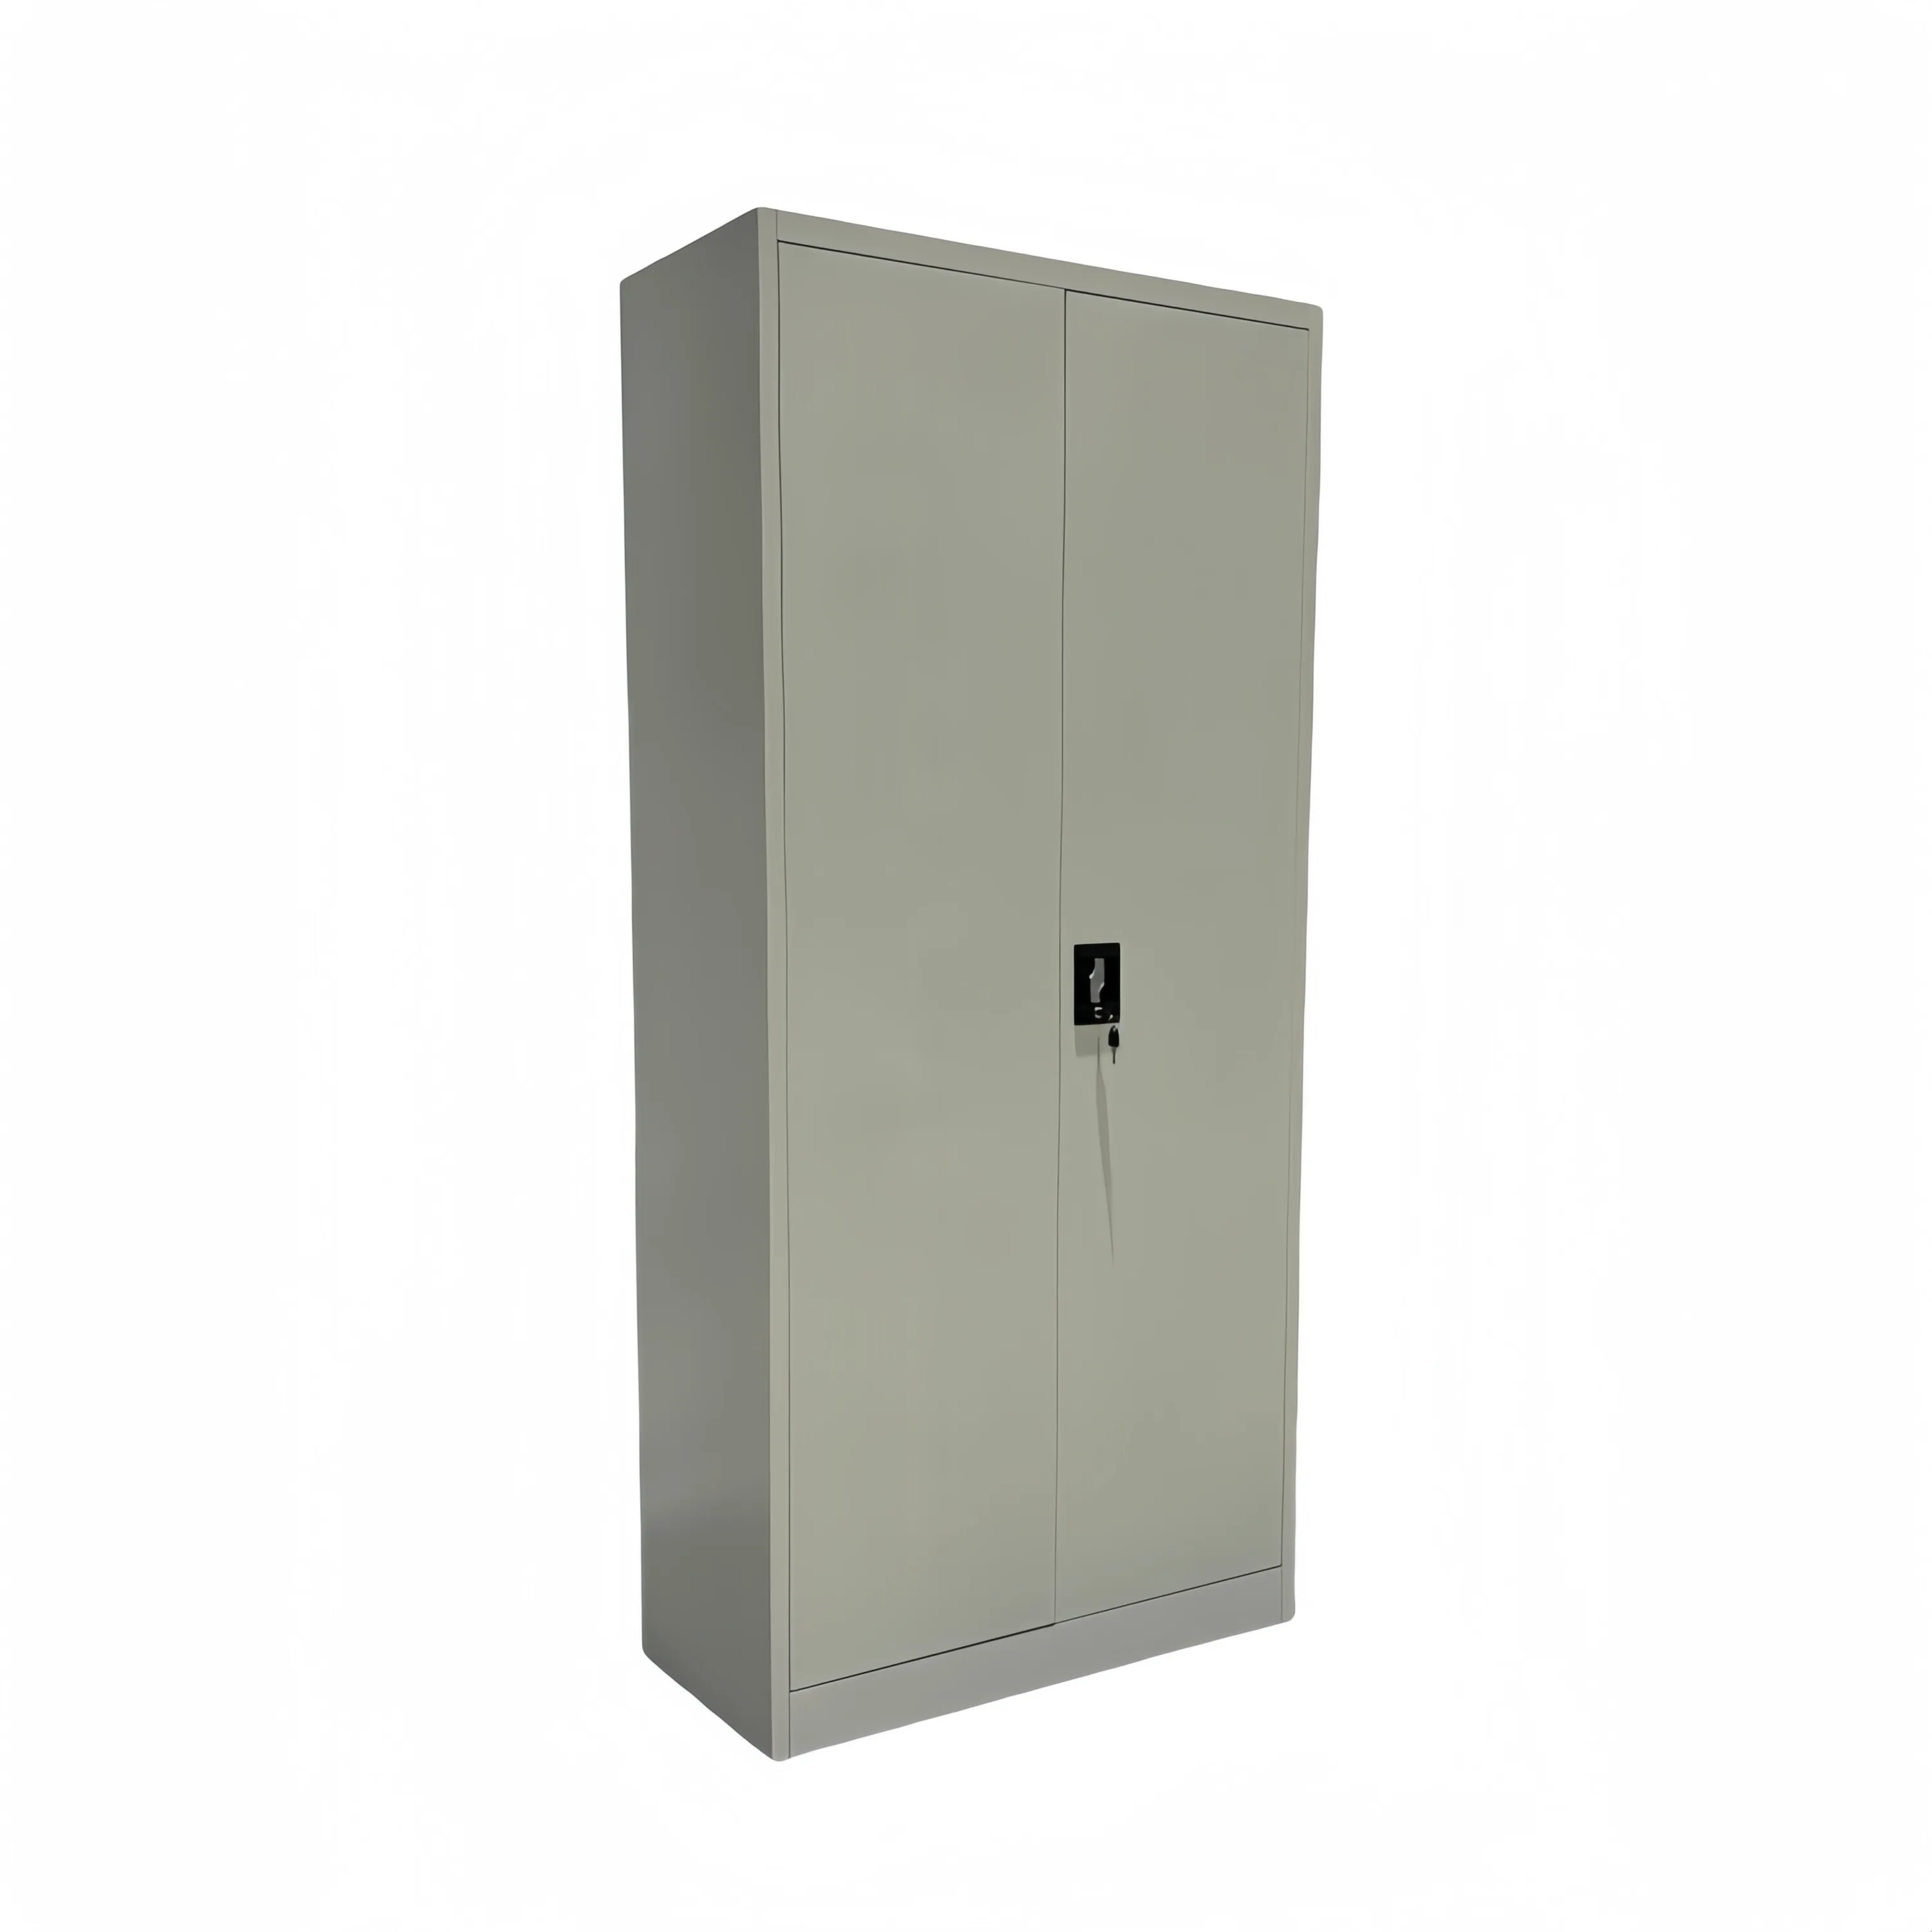 LAKSHYO новый дизайн офисная мебель Китай дешевые 2 двери офисный шкаф для хранения металлических файлов с замком молнии